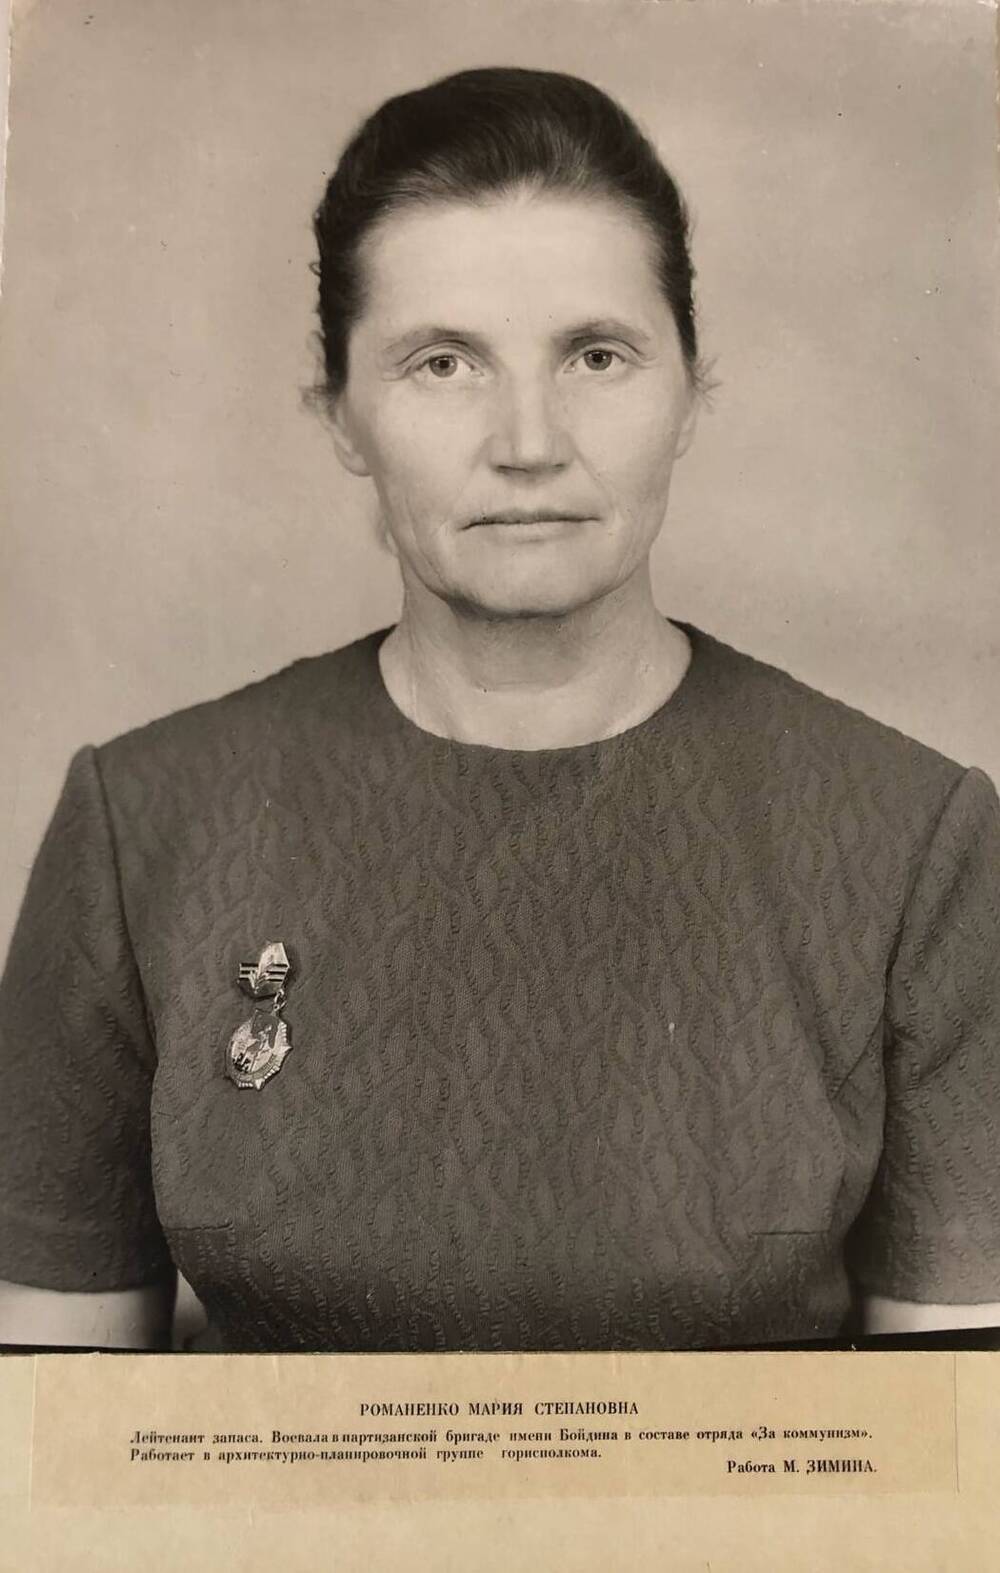 Фотография Романенко Марии Степановны, участницы Великой Отечественной войны 1941-1945 гг.